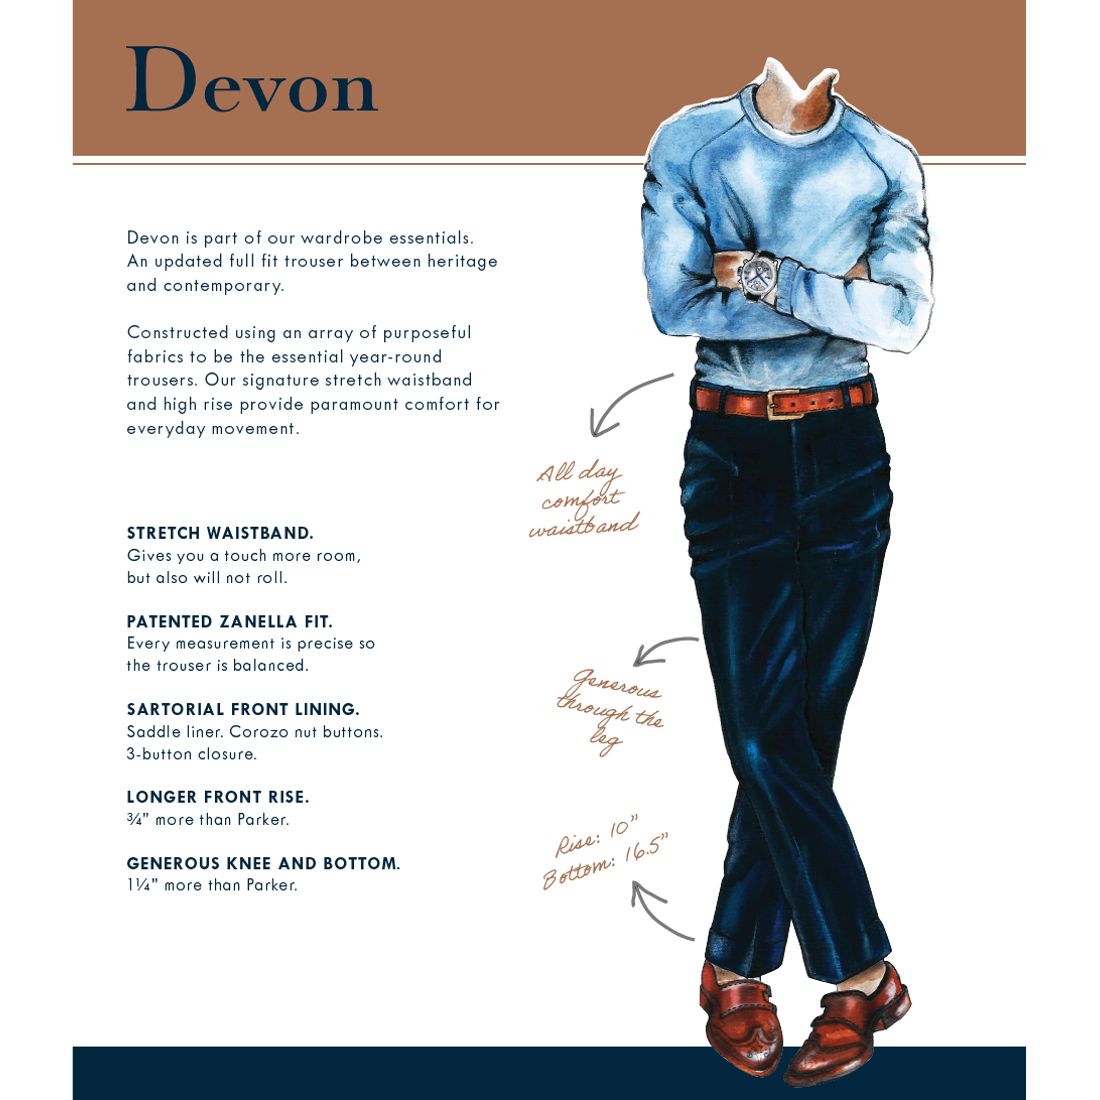 Devon Flat Front Super 120s Wool Serge Trouser in Tan (Size 46) (Modern Full Fit) by Zanella